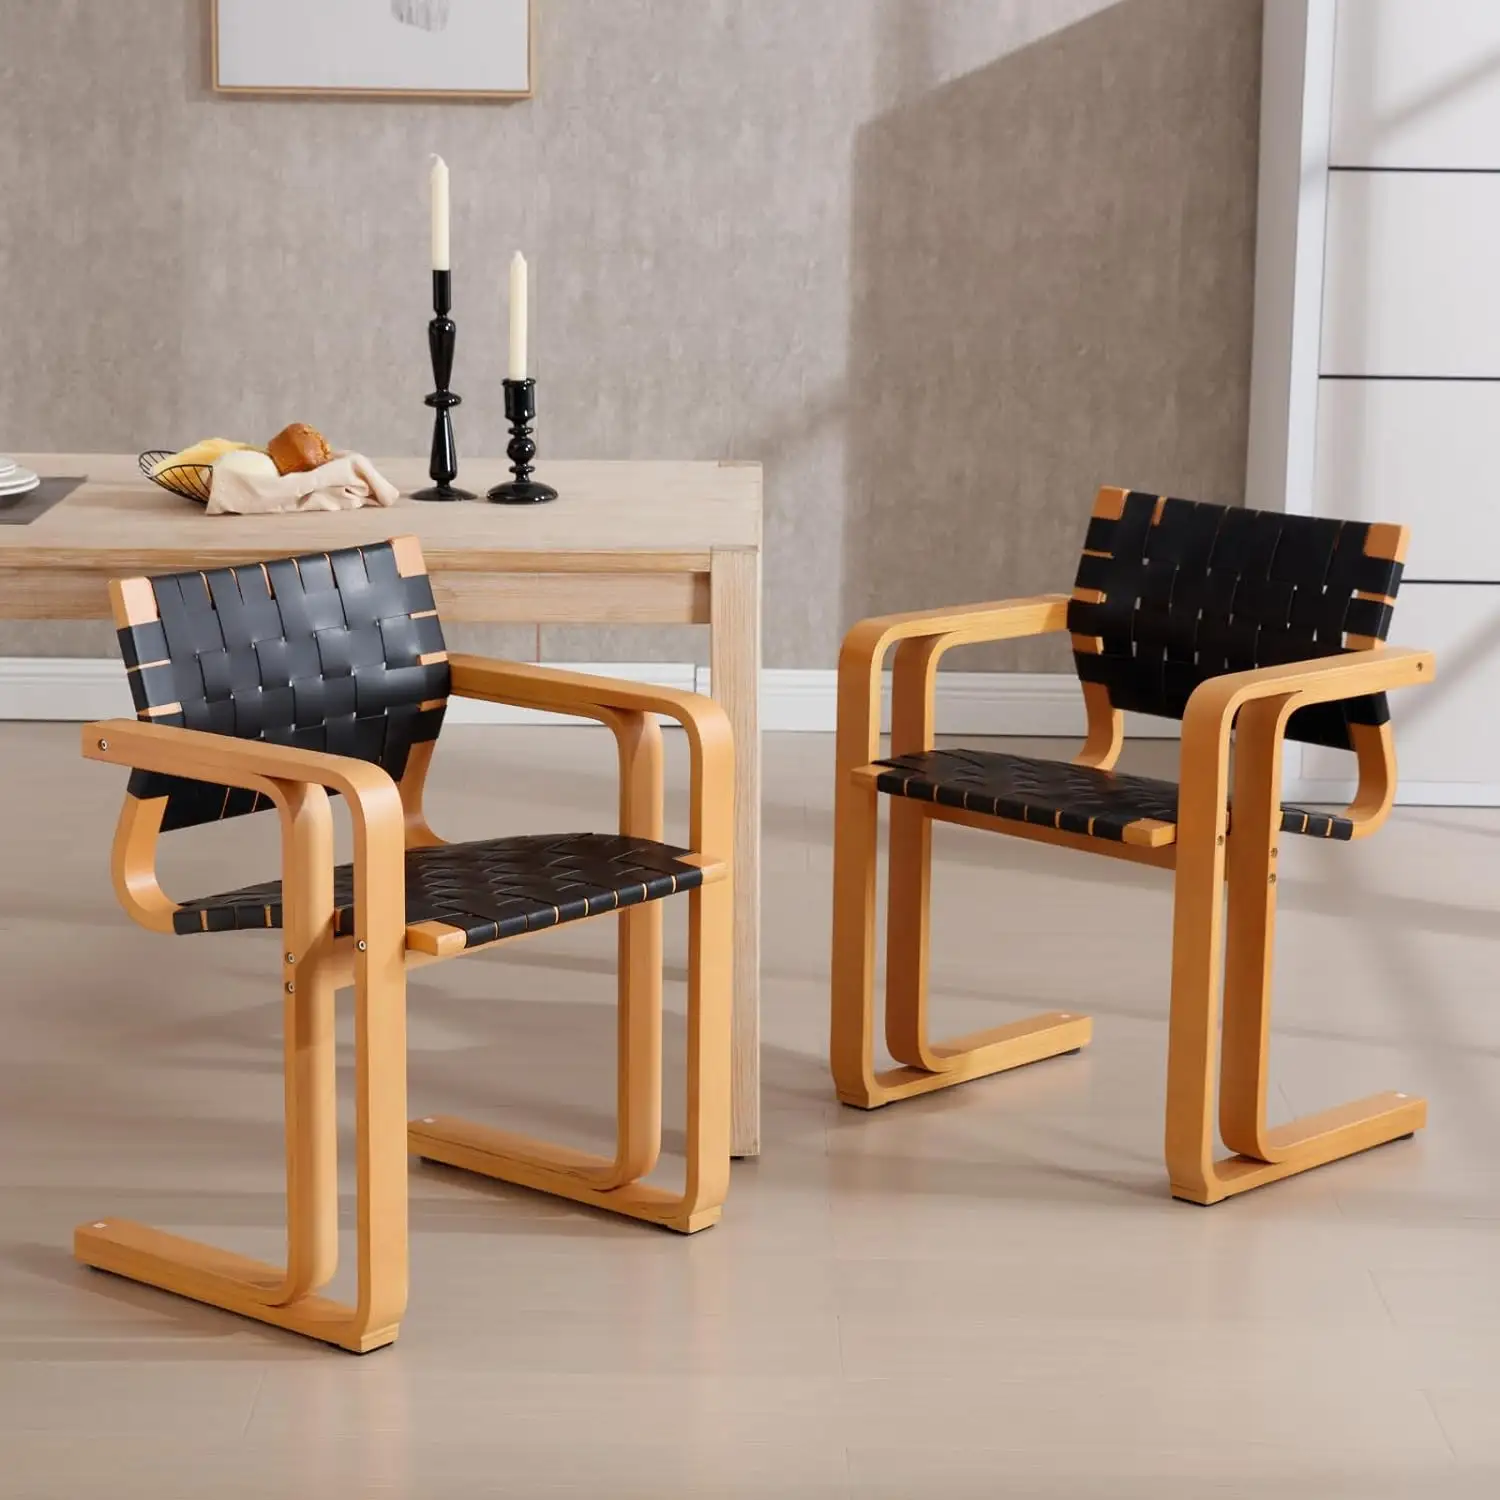 Juego de sillas de comedor tejidas de piel sintética de 2 negras con asiento y correa de respaldo de madera natural para el hogar, cocina, cafés, restaurantes